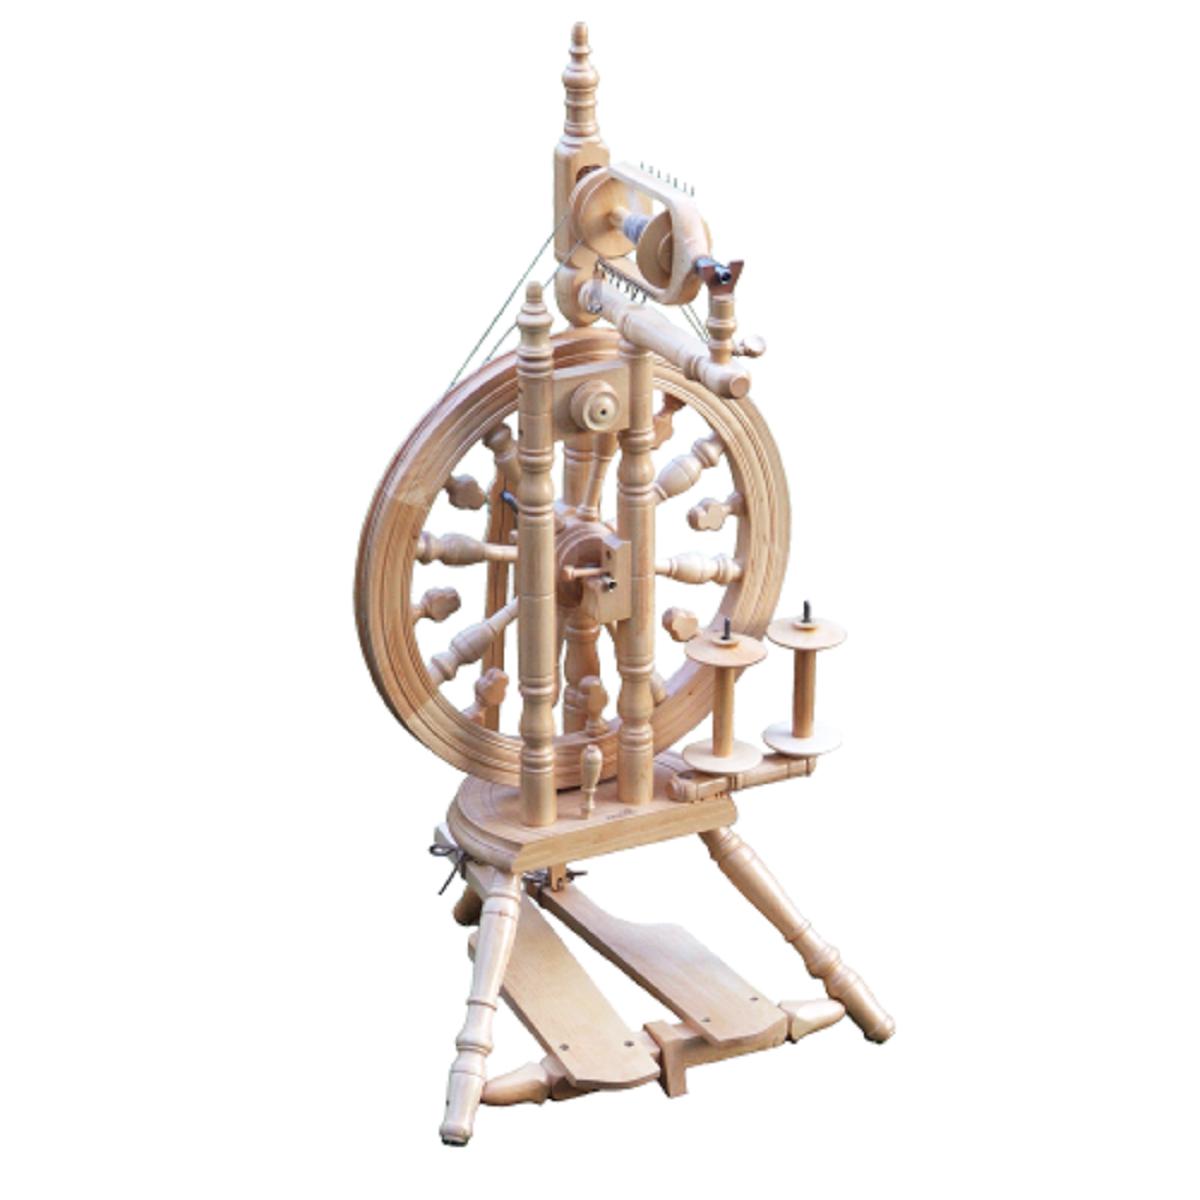 Kromski Minstrel Spinning Wheel-Spinning Wheel-Kromski-Unfinished-Revolution Fibers